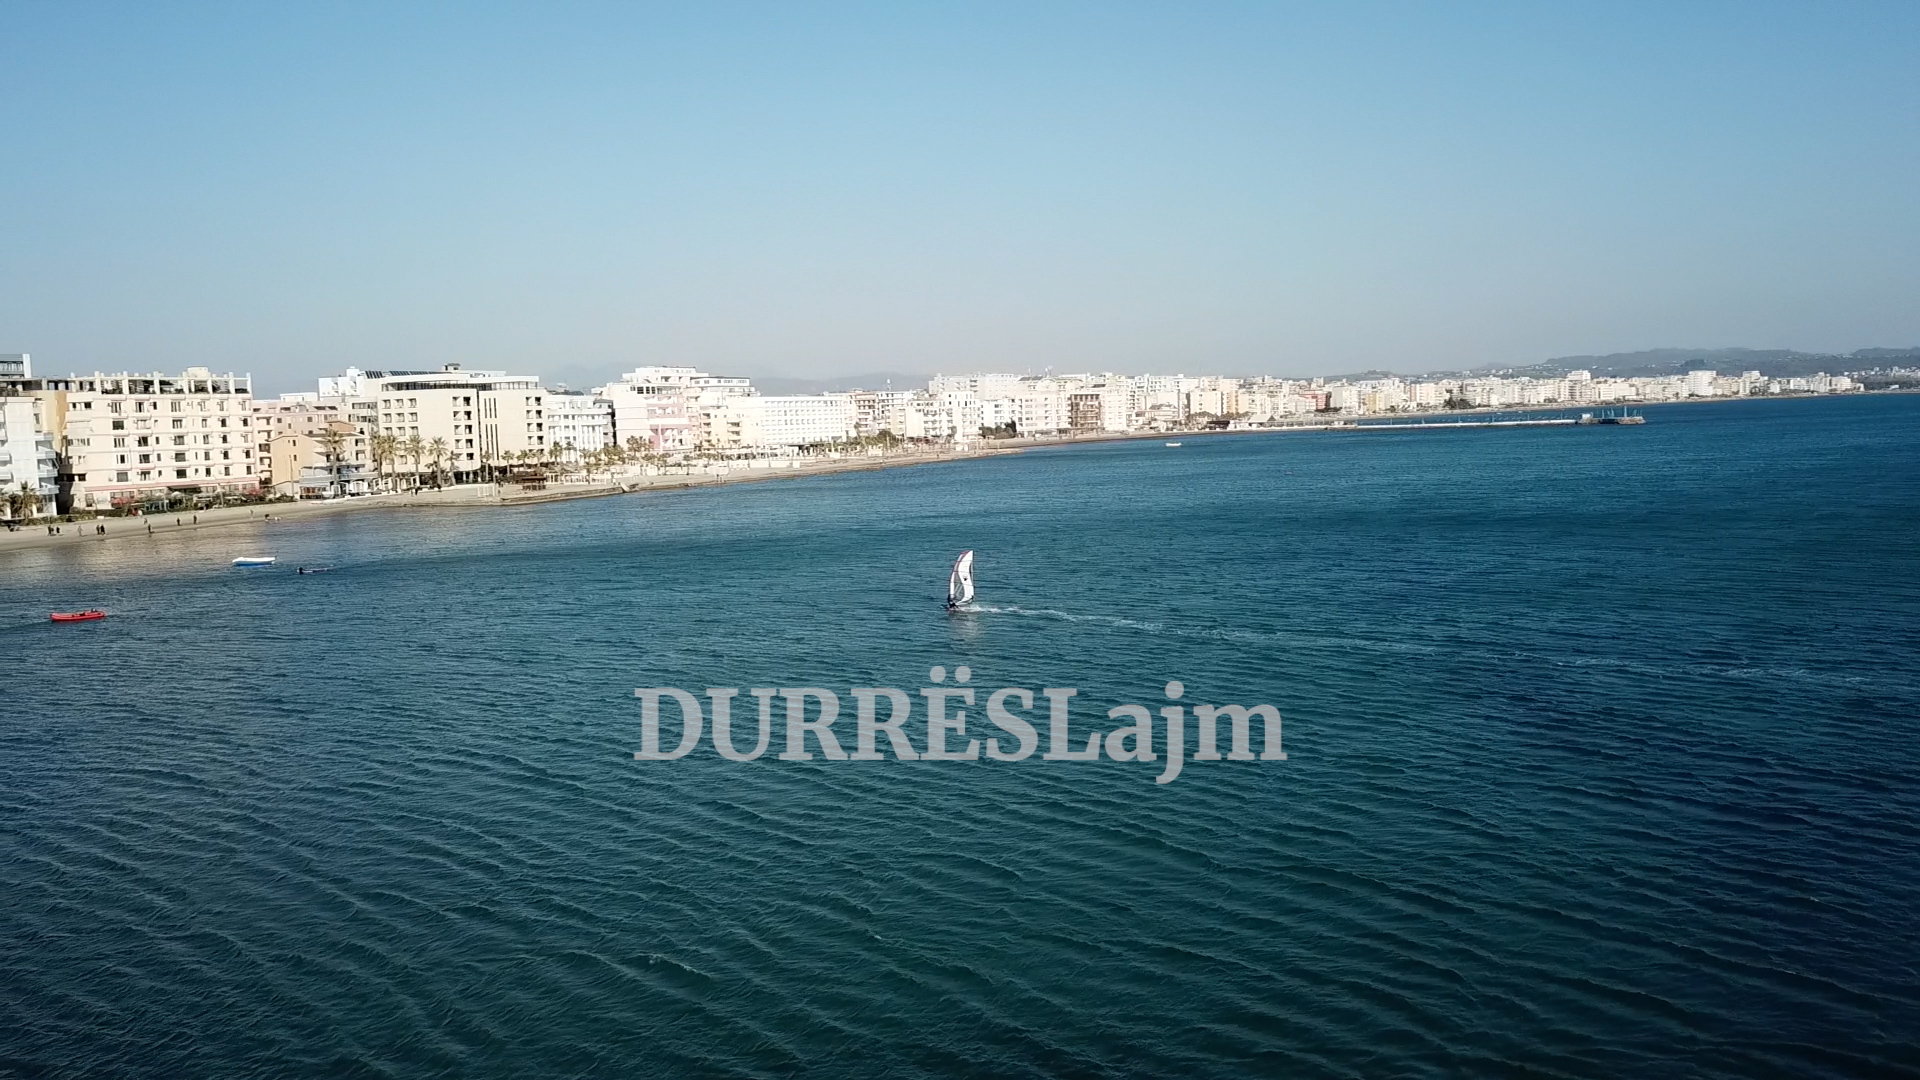 Durrësi premton një sezon të suksesshëm, për herë të parë chartera edhe nga ky vend evropian (VIDEO)